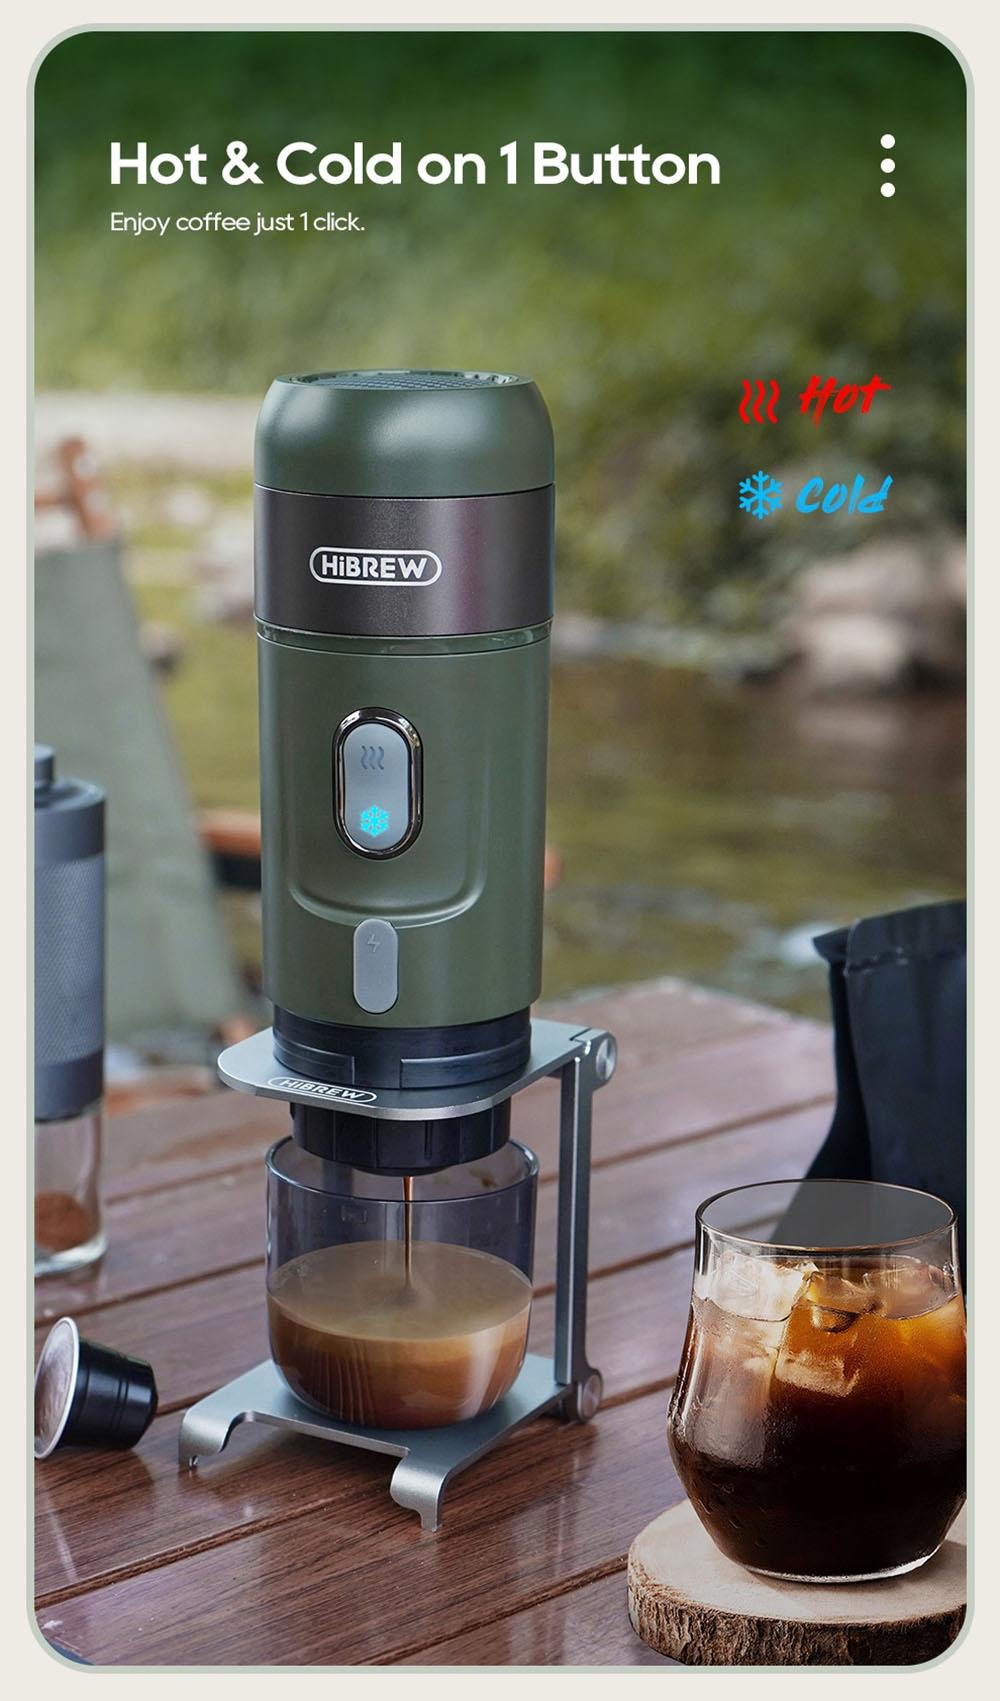 HiBREW H4B Wireless Portable 3 in 1 Espresso Coffee Maker, 15 Bar